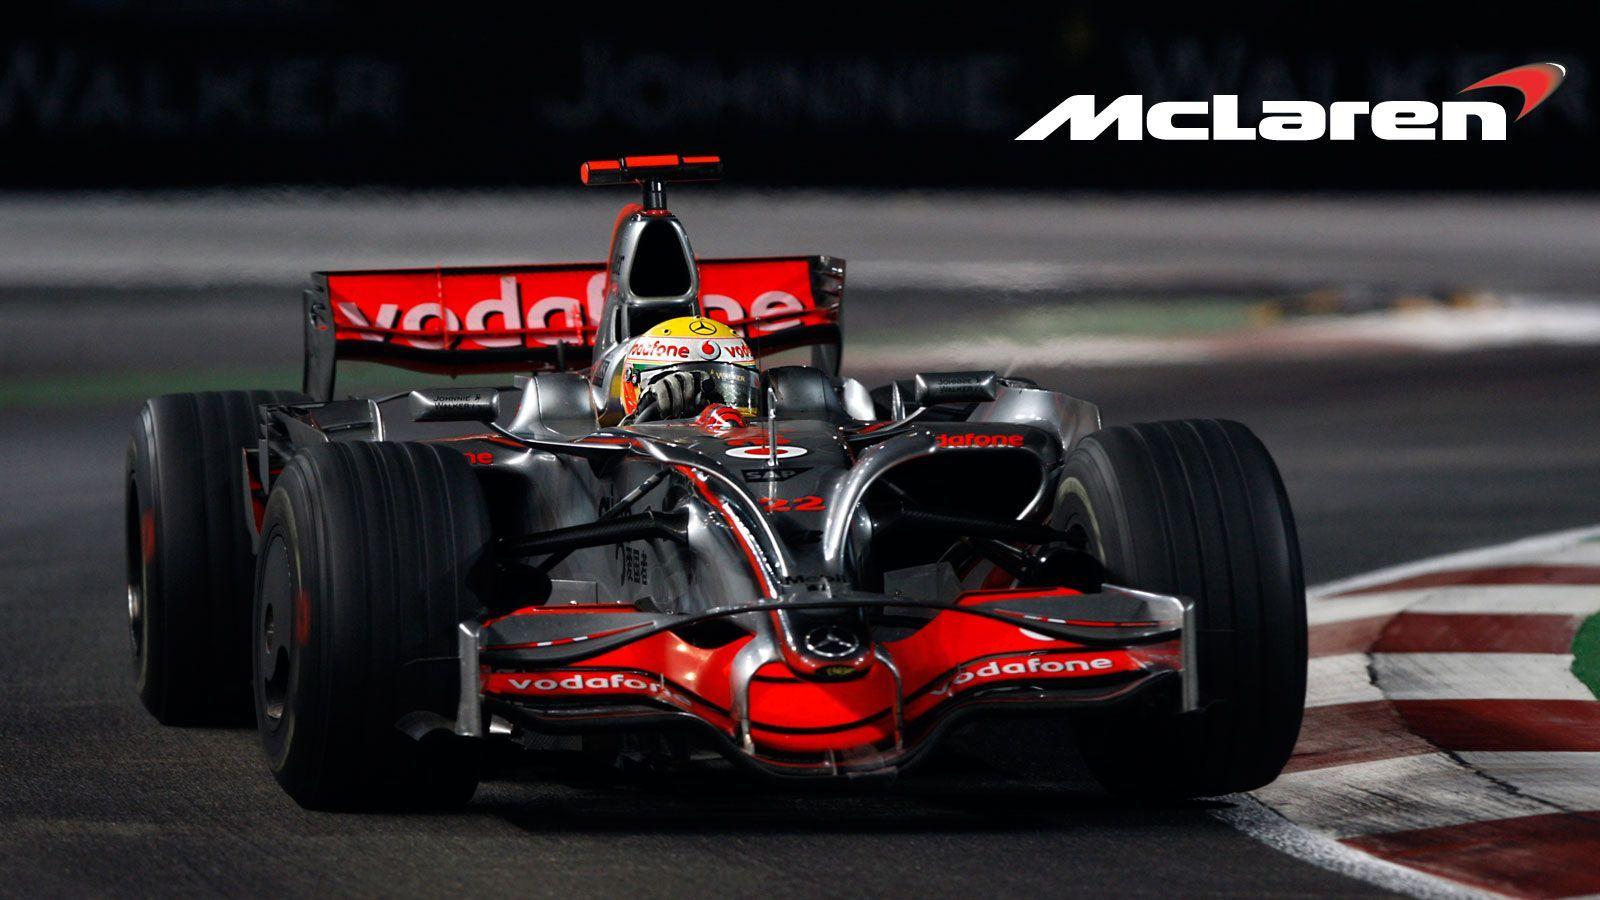 2016 McLaren F1 Logo - F1 needs to look sexy' - Magnussen